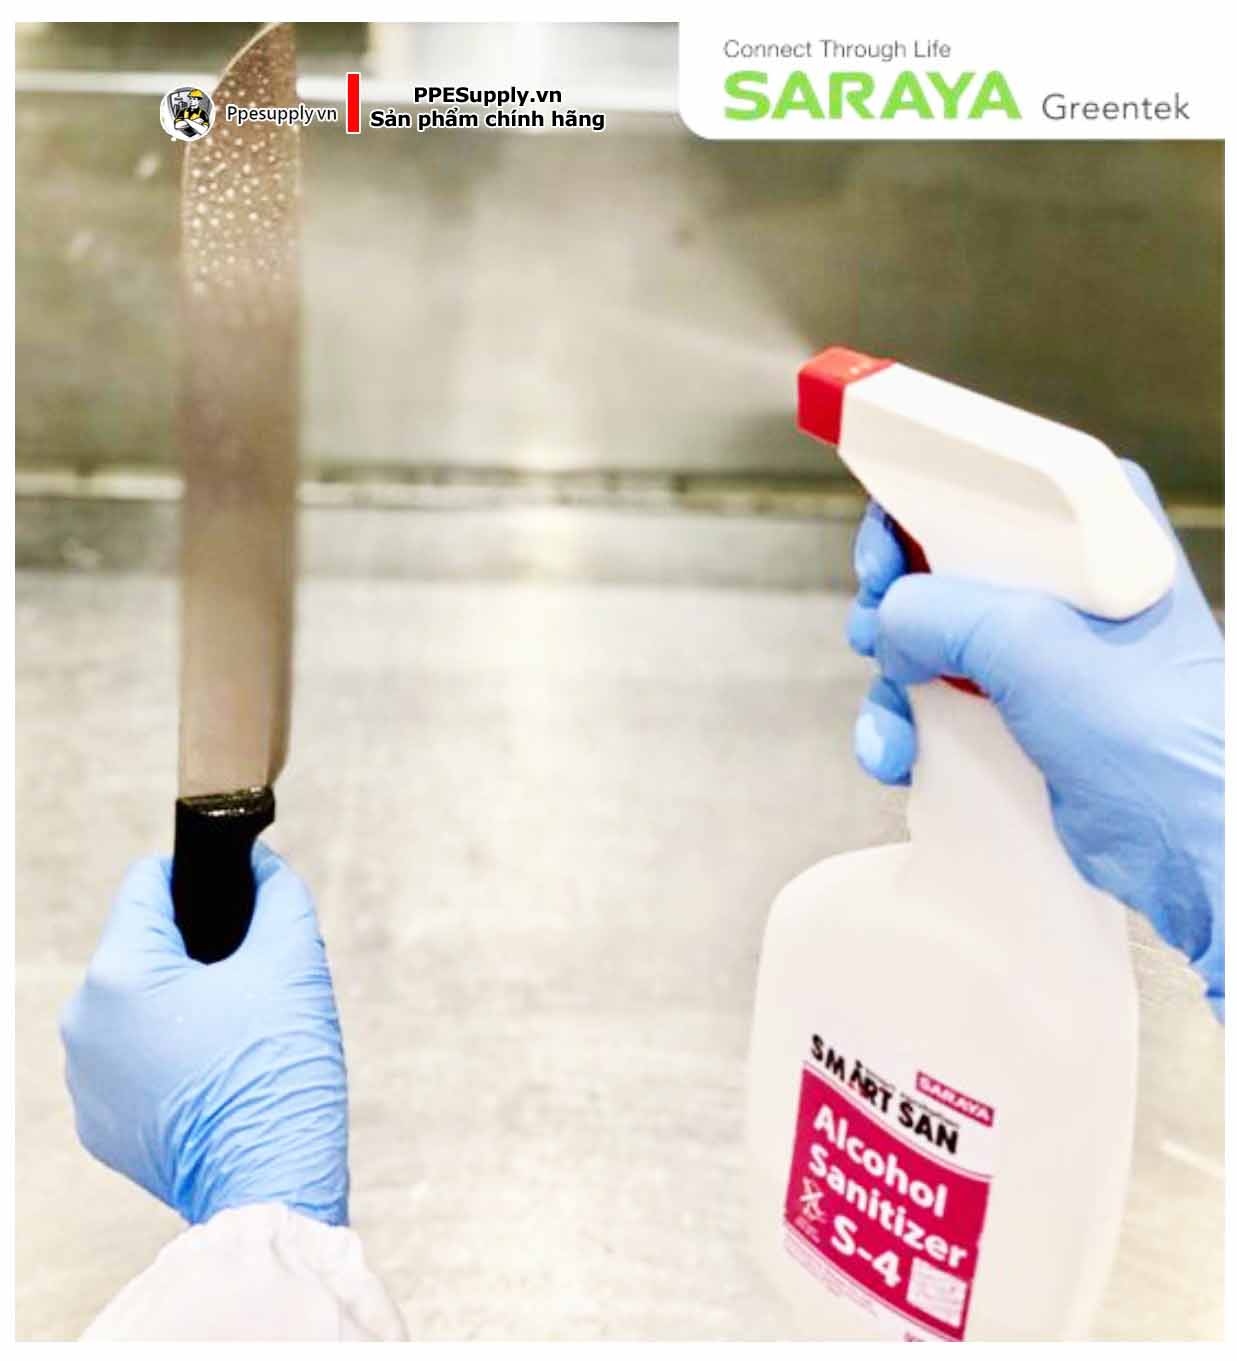 Bình xịt phun sương dung dịch Saraya Smart San dạng phun, kèm đầu bơm phun sương - 500ml